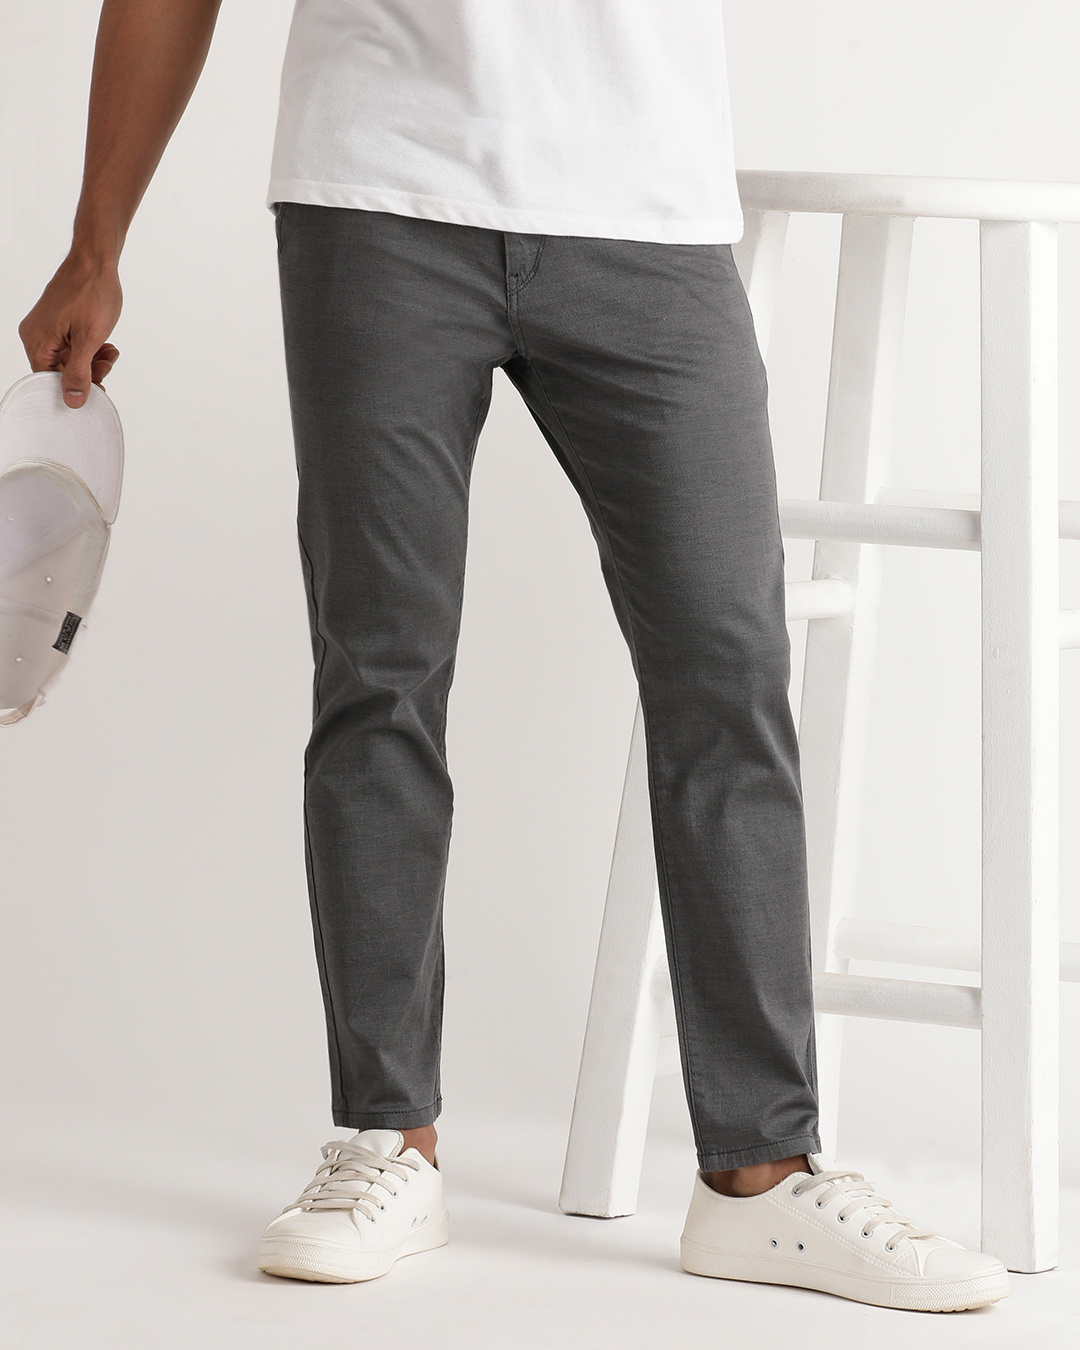 Buy Men's Grey Slim Fit Trousers Online at Bewakoof